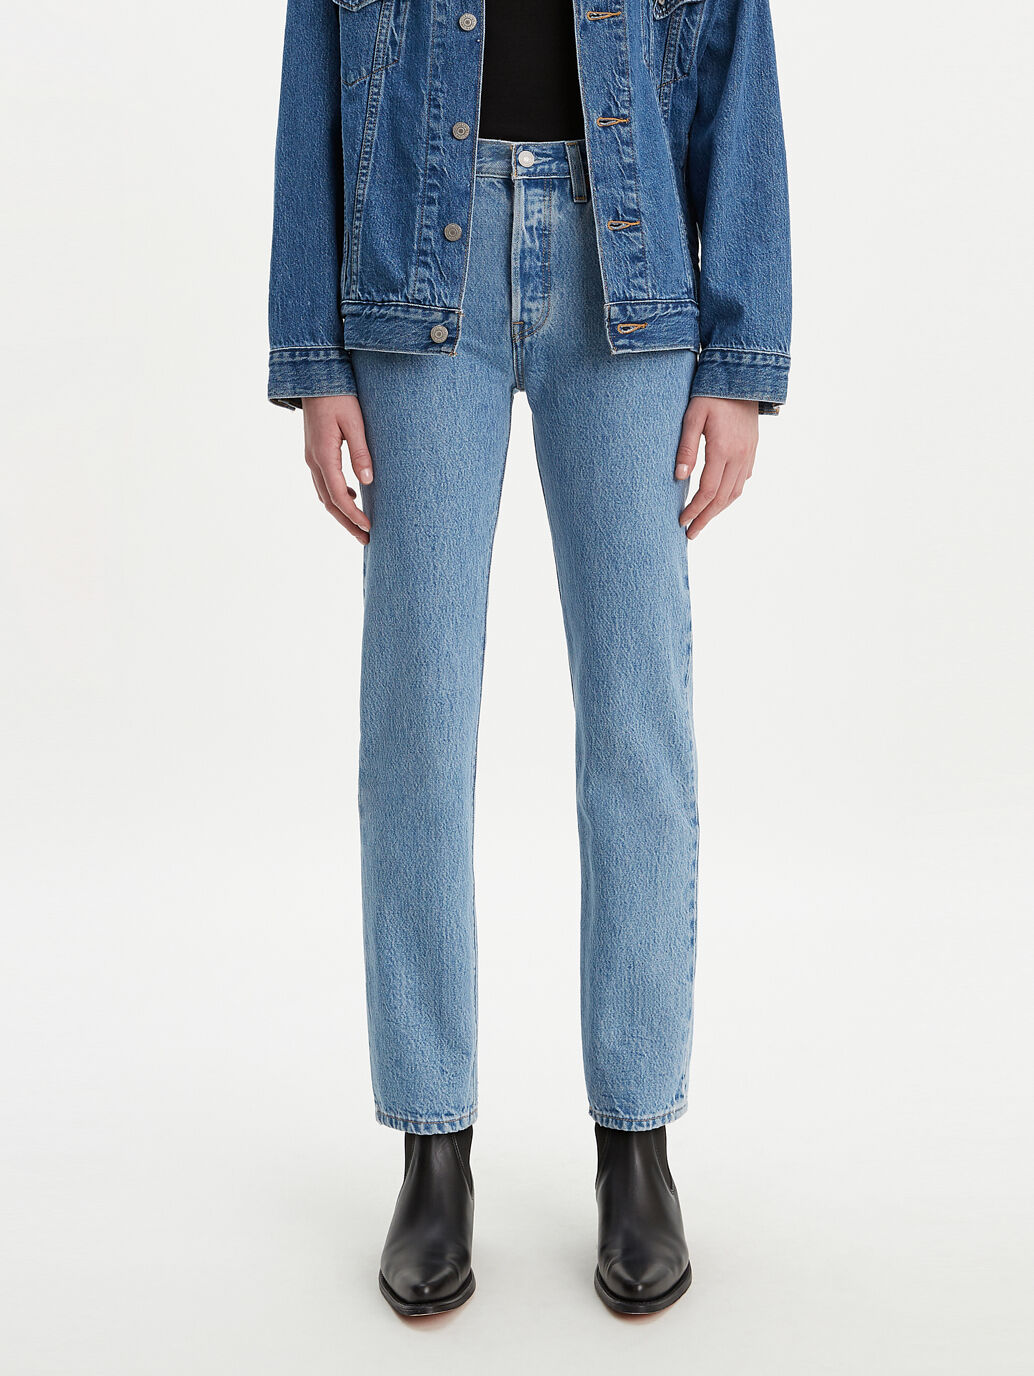 Levi’s® Australia 501® Original Fit Jeans Luxor Indigo